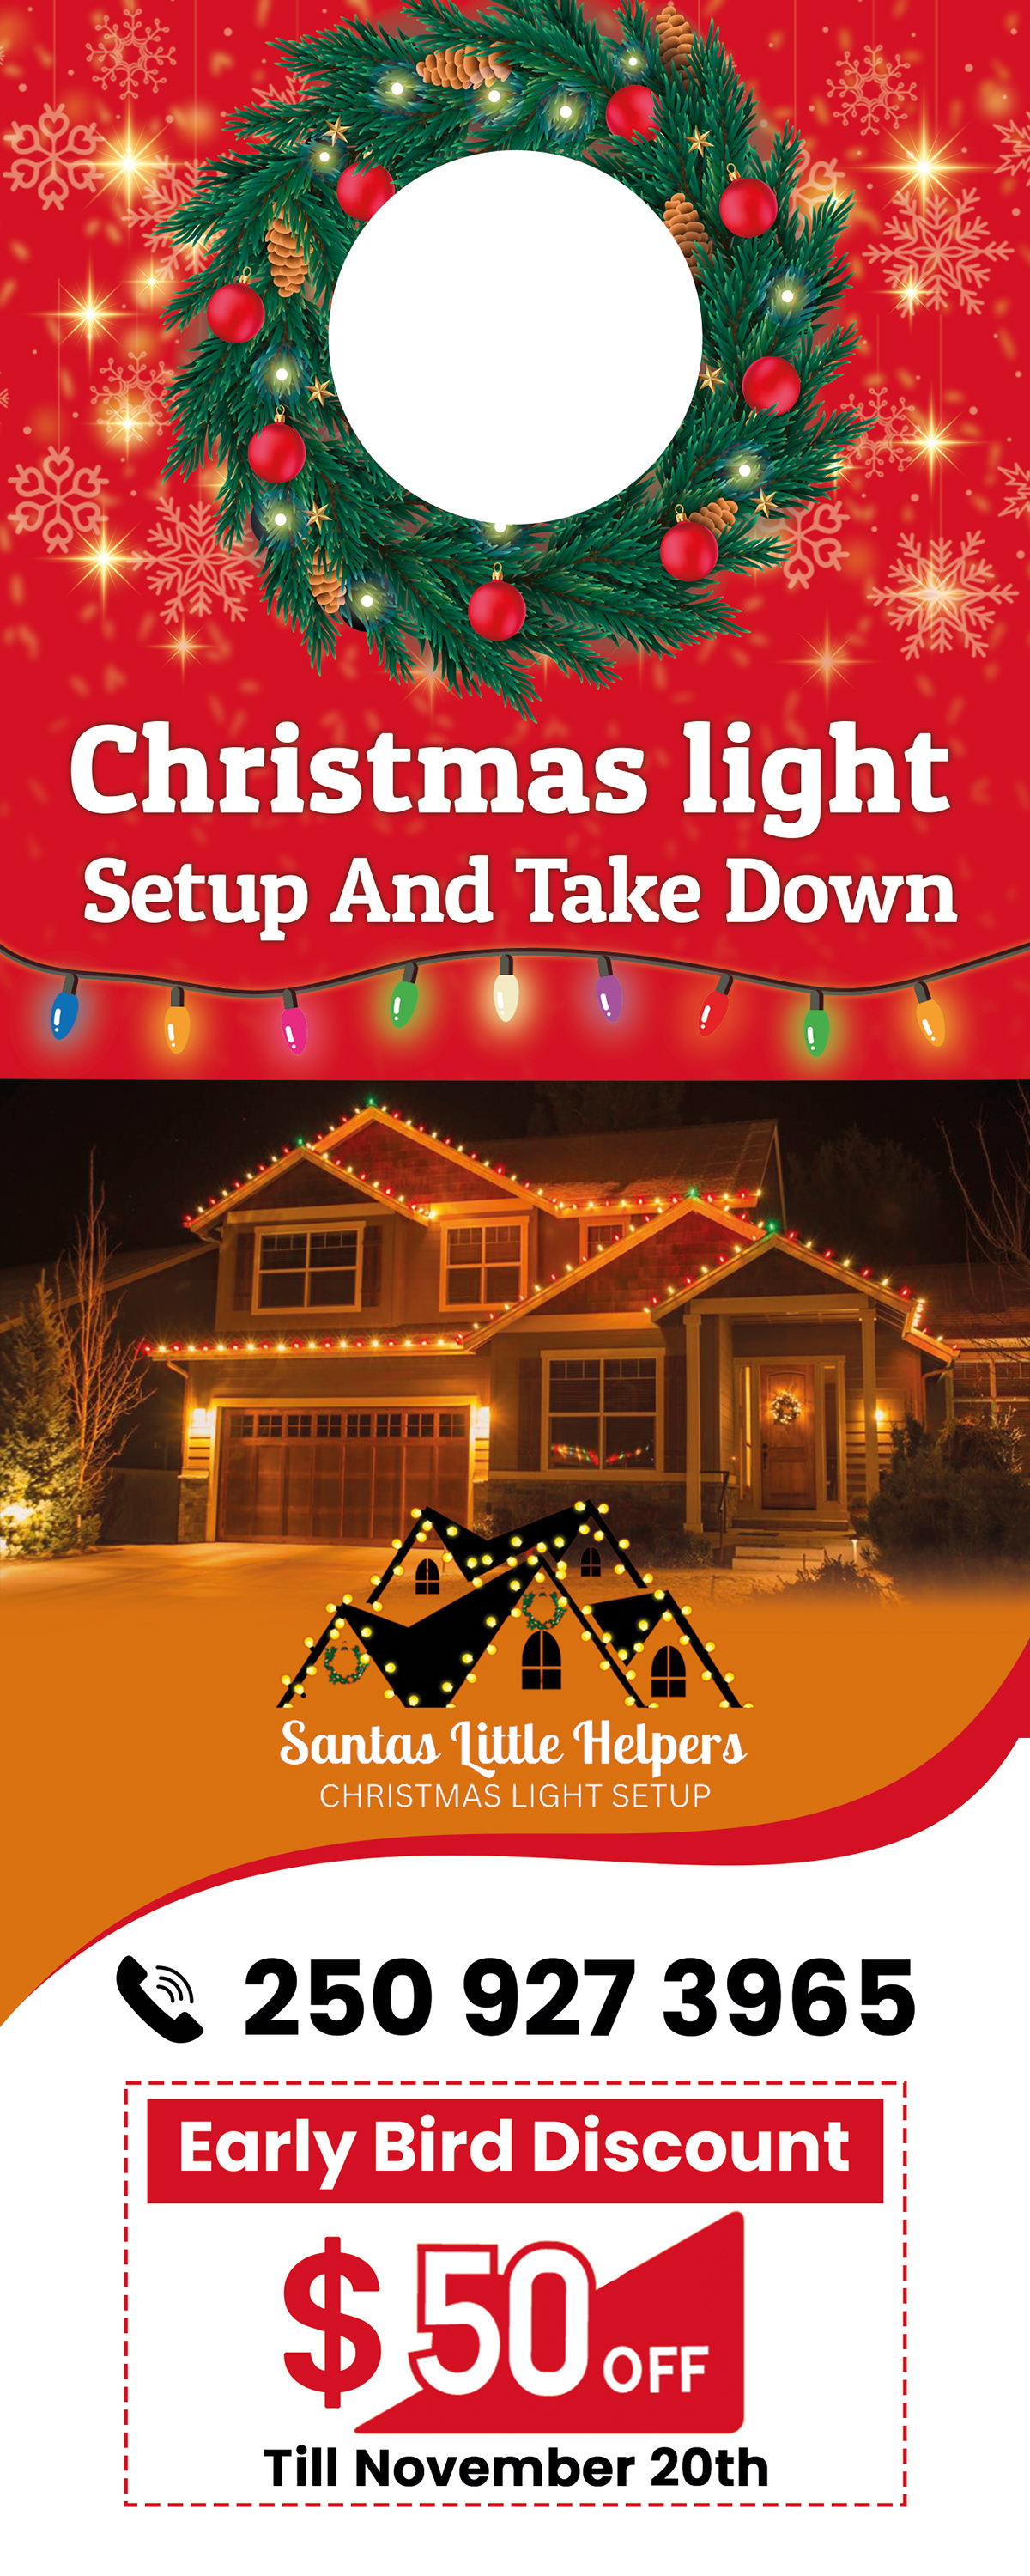 Christmas Door Hanger rack card marketing   Advertising  ads Social media post light design santas